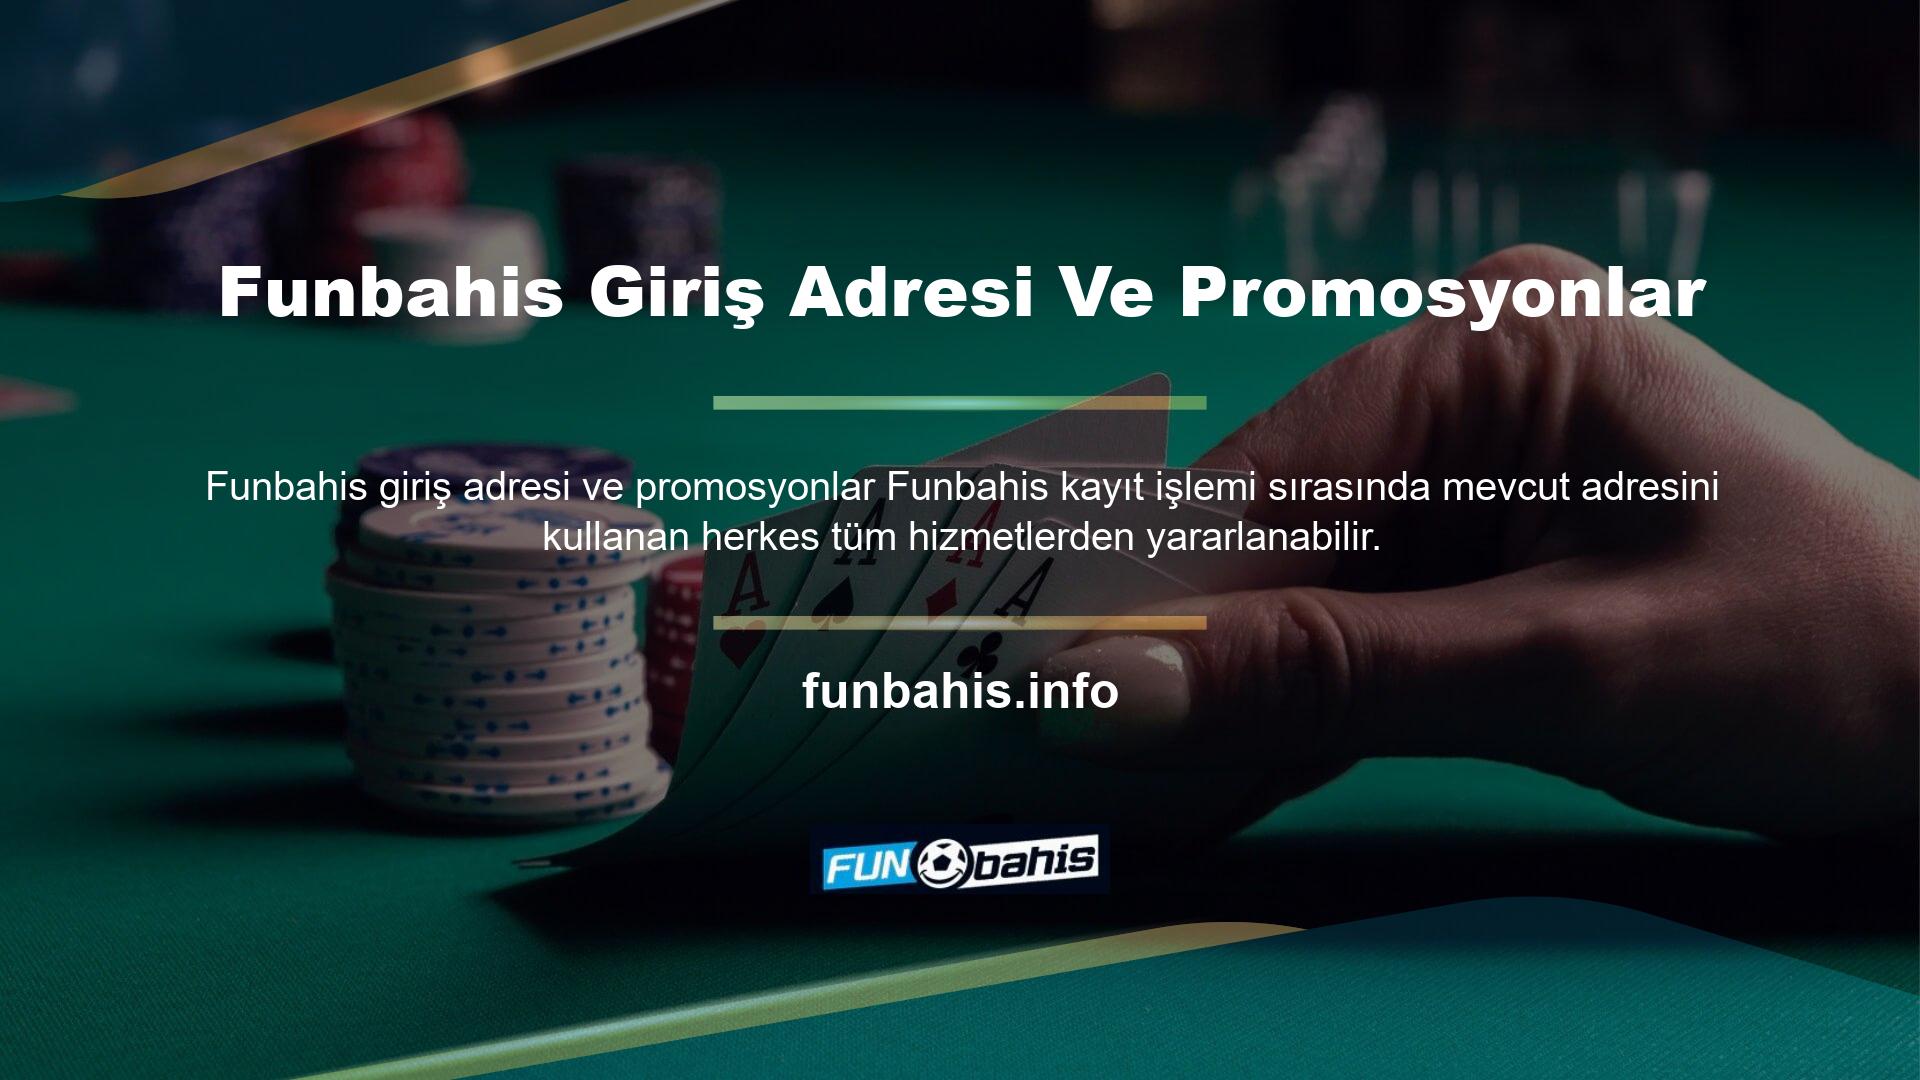 Funbahis web sitesi, Türkiye'de faaliyet gösteren üyeler için özel promosyonlar sunmaktadır